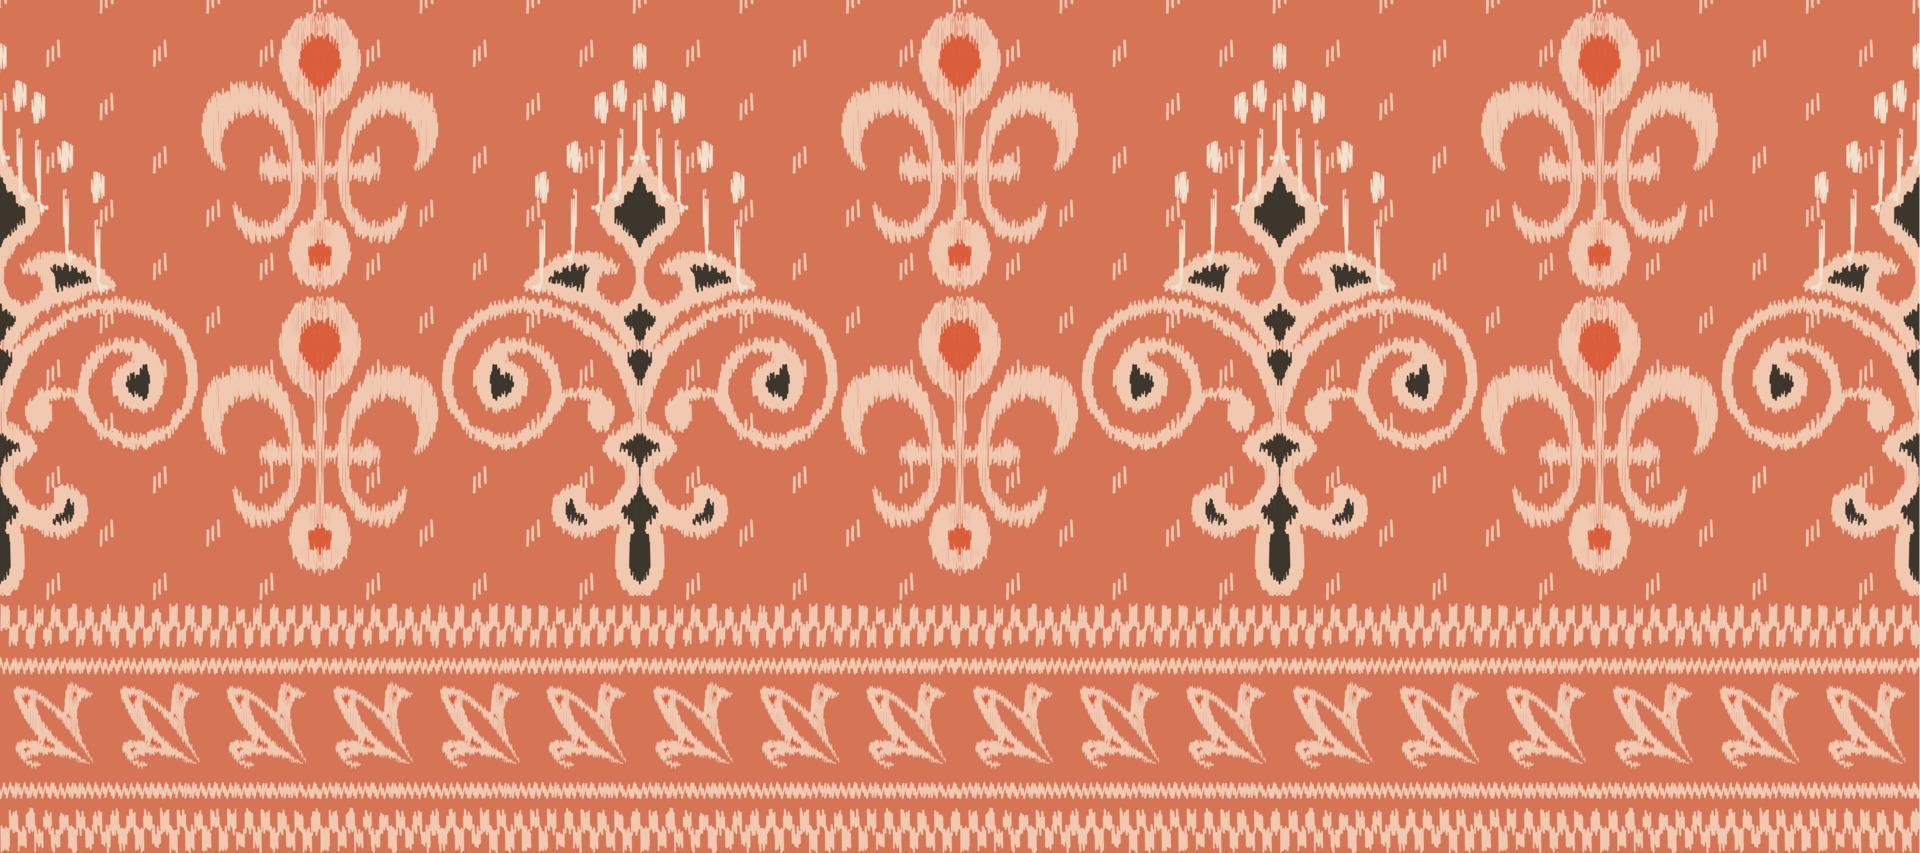 africain ikat damassé paisley broderie Contexte. géométrique ethnique Oriental modèle traditionnel. ikat aztèque style abstrait vecteur illustration. conception pour impression texture, tissu, sari, sari, tapis.